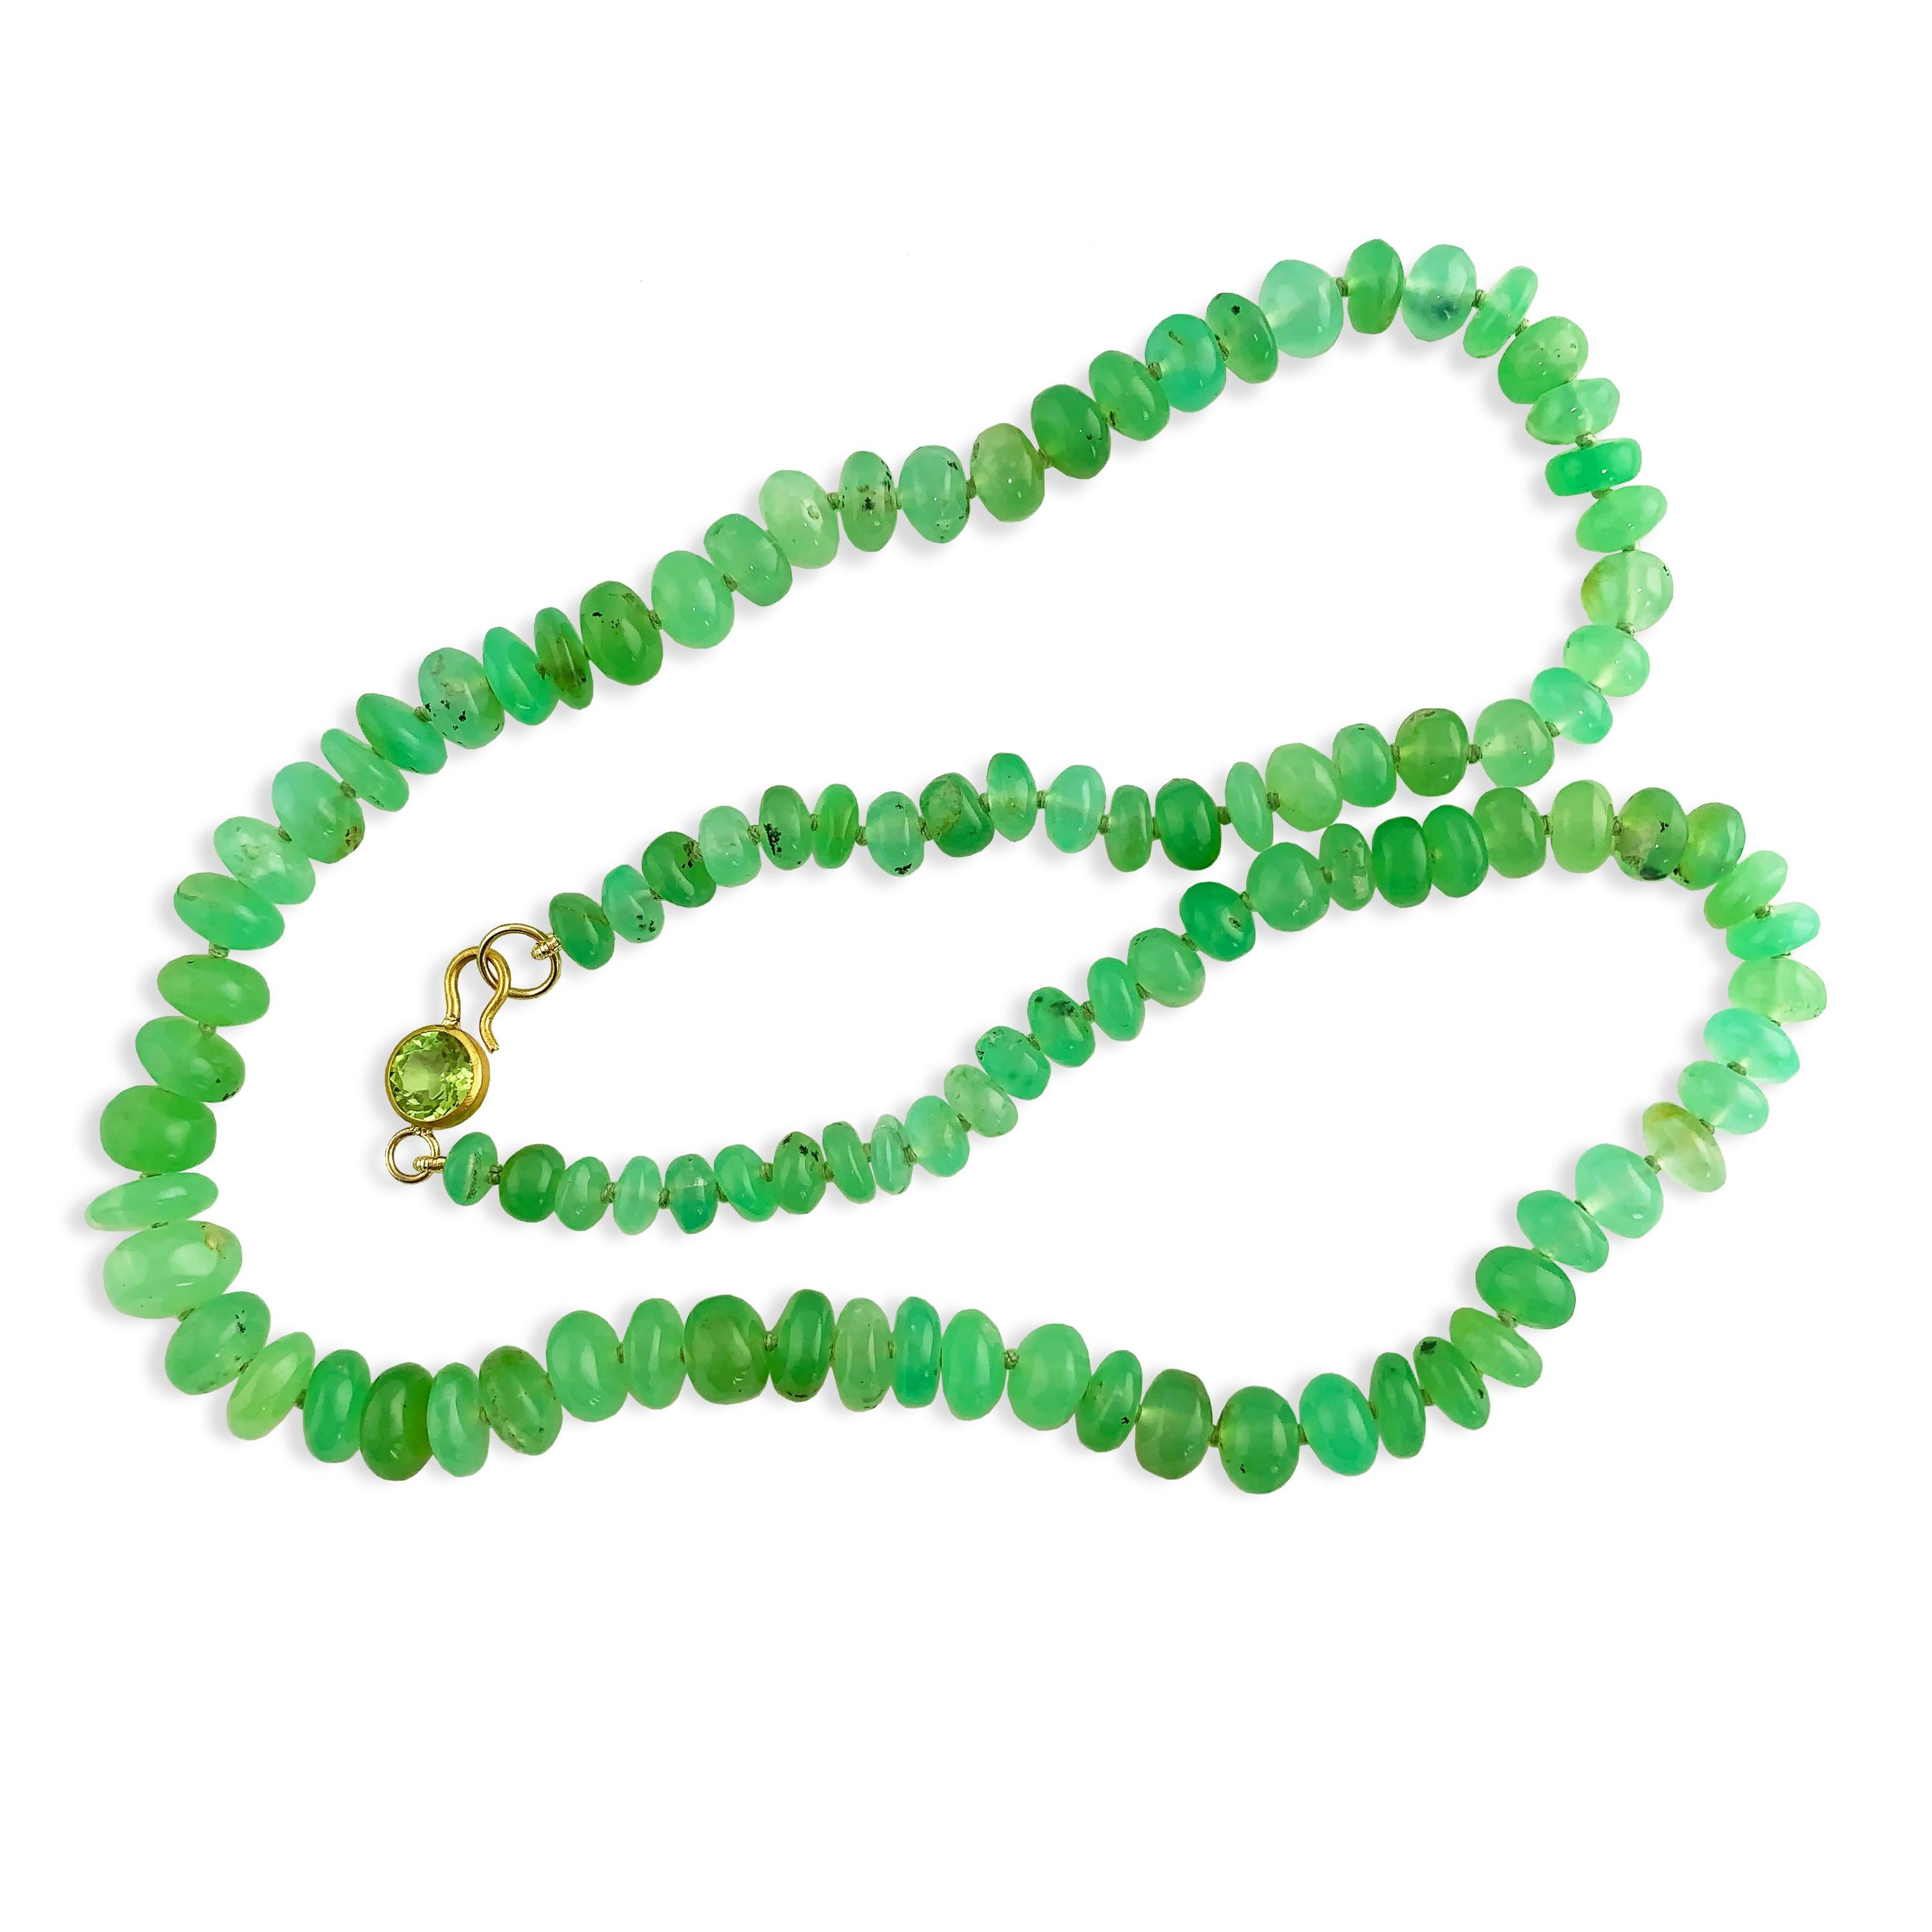 Ein wunderschönes, leuchtend grünes Collier aus natürlichem Chrysopras.  Perfekt zum Kombinieren mit anderen Halsketten oder zum alleinigen Tragen.  Die Chrysopras-Perlen sind von 7 mm bis 9 mm abgestuft.  
Maße: 16